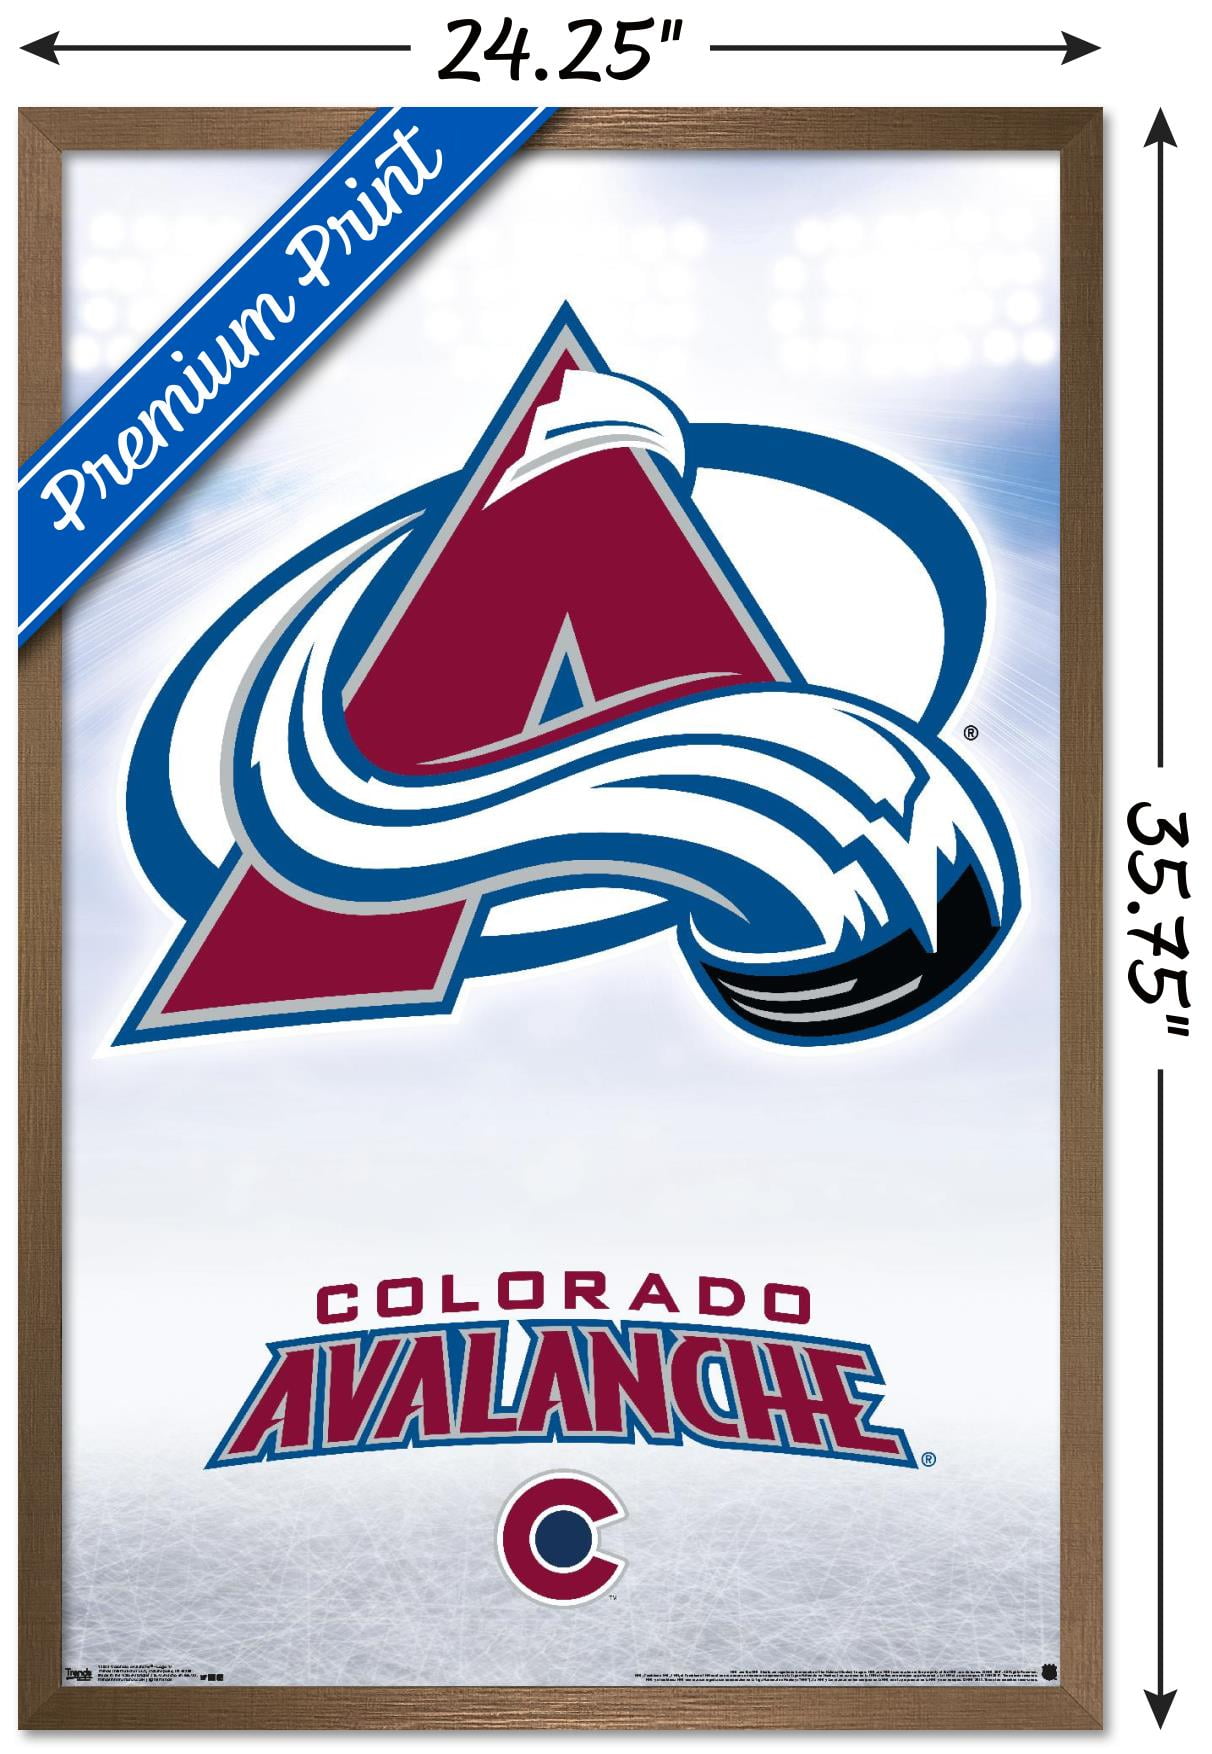 Colorado Avalanche (@Avalanche) / X